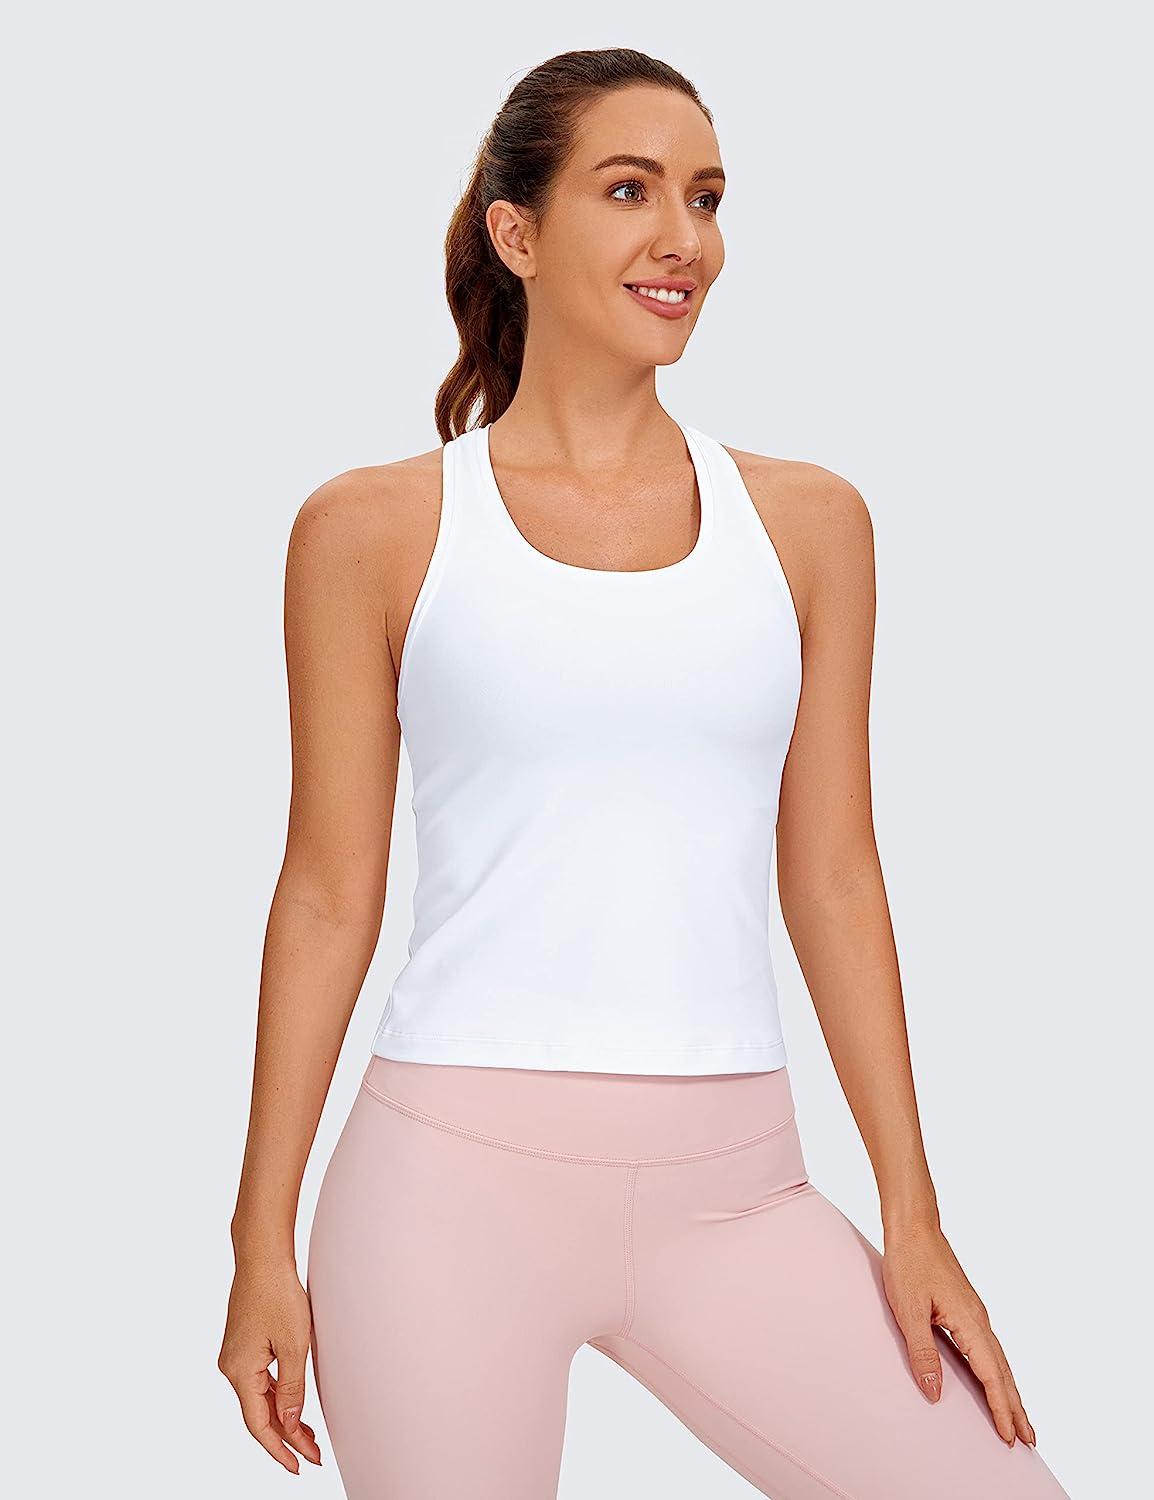  Womens Butterluxe Long Sleeve Workout Shirts Half